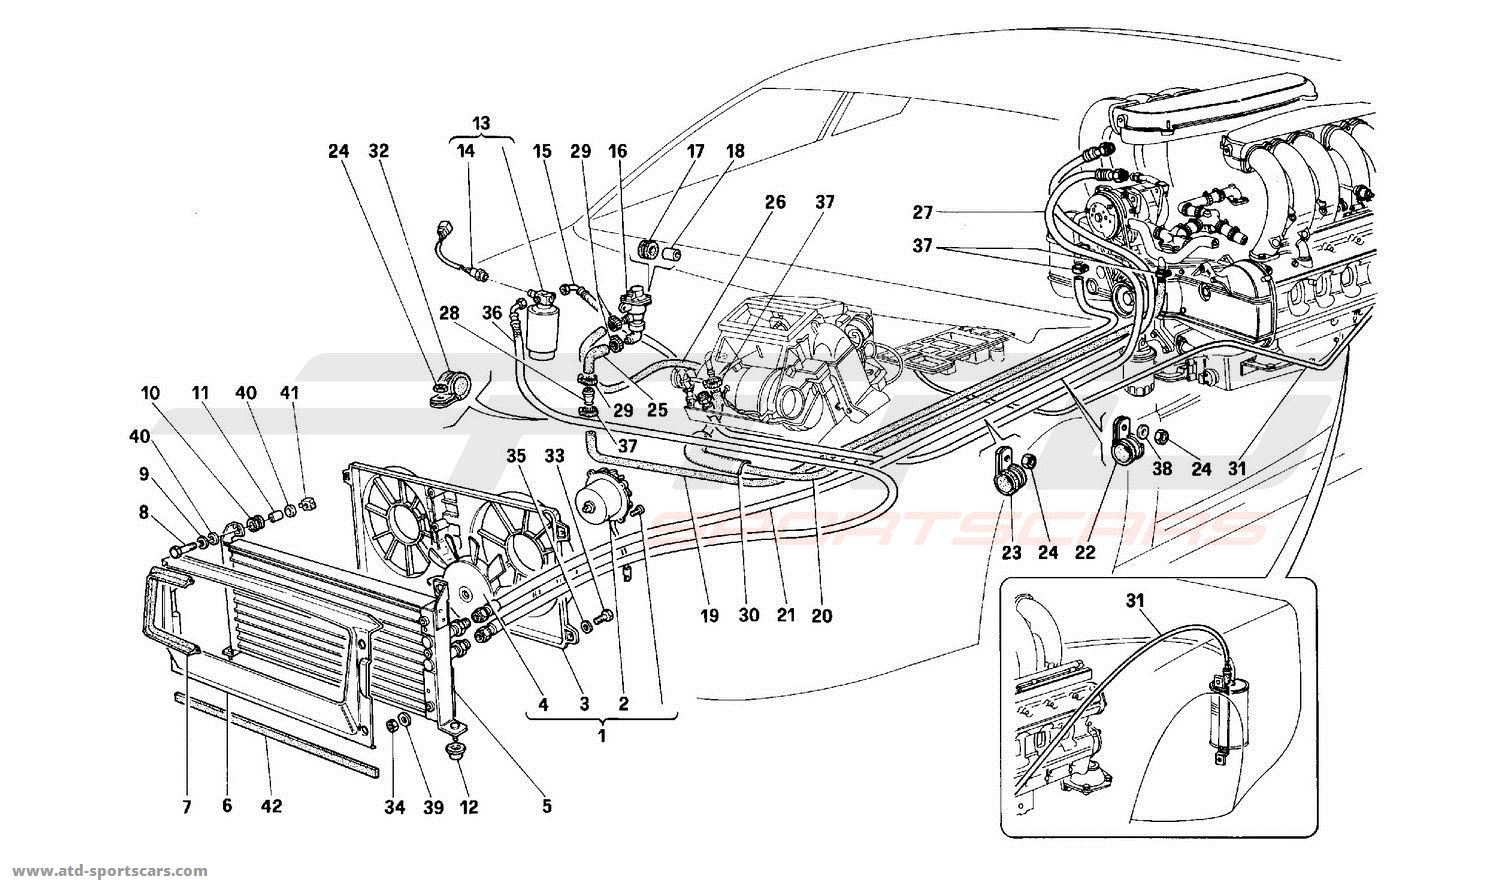 Ferrari 512 TR AIR CONDITIONING SYSTEM